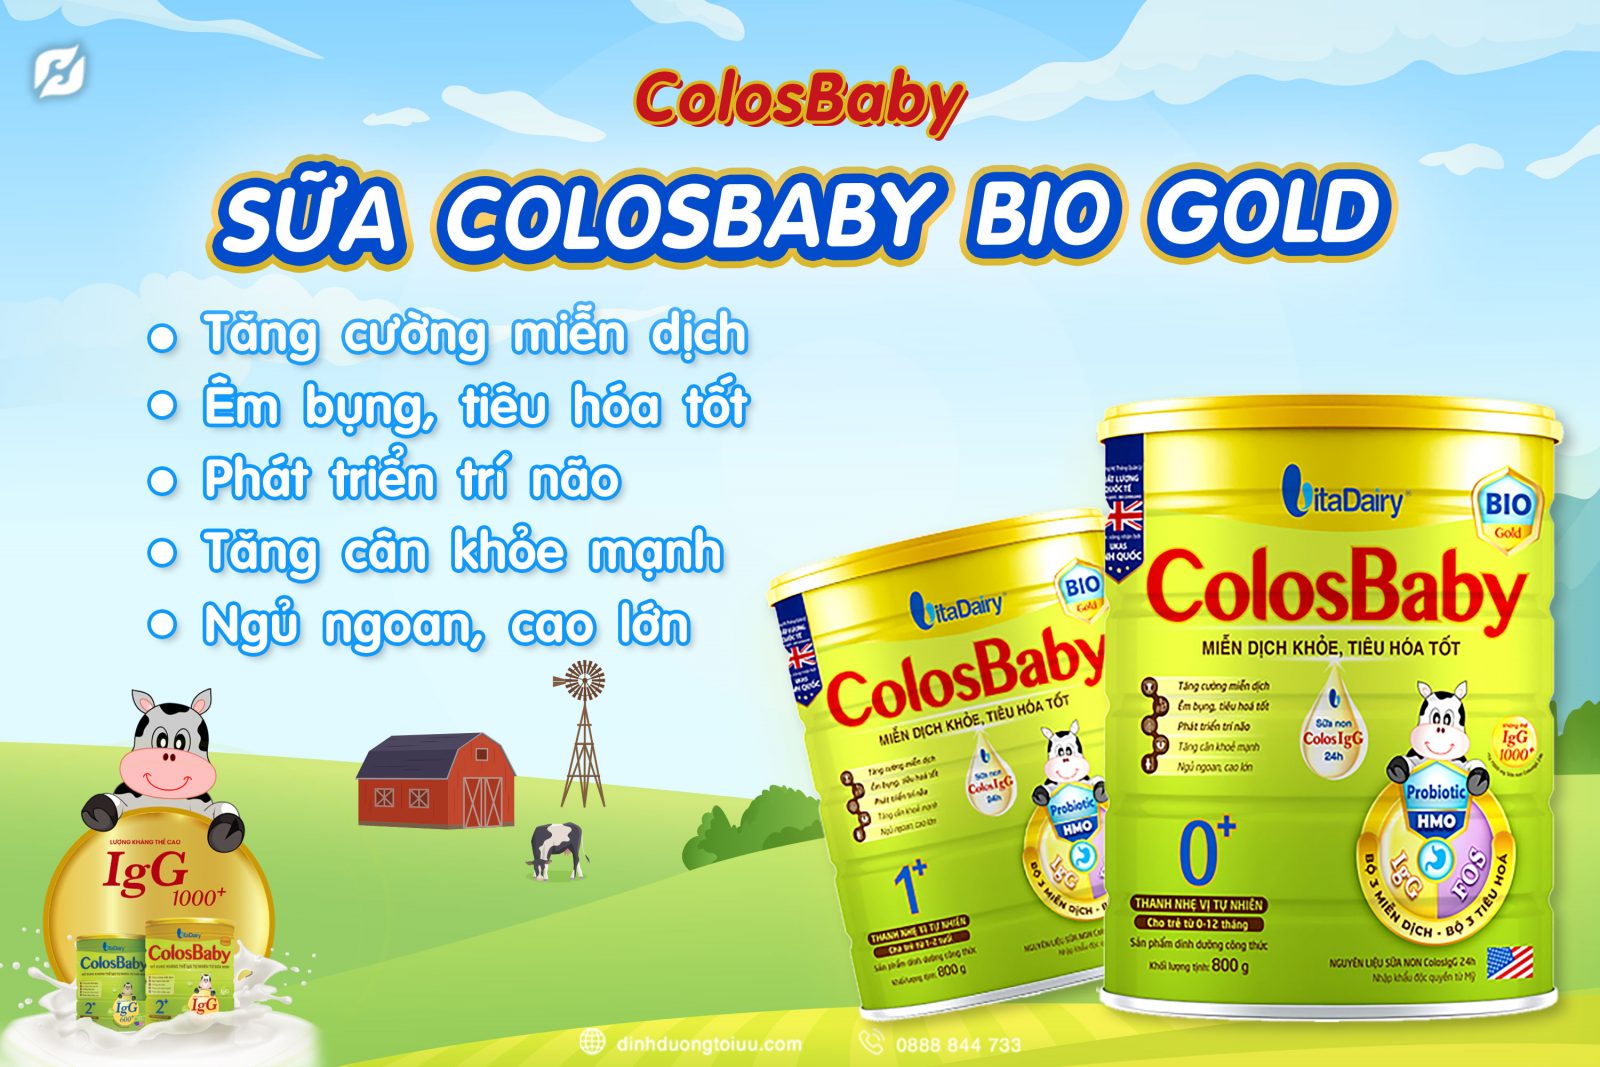 ColosBaby Bio Gold và công dụng nổi bật dành riêng cho trẻ đến từ công ty VitaDairy